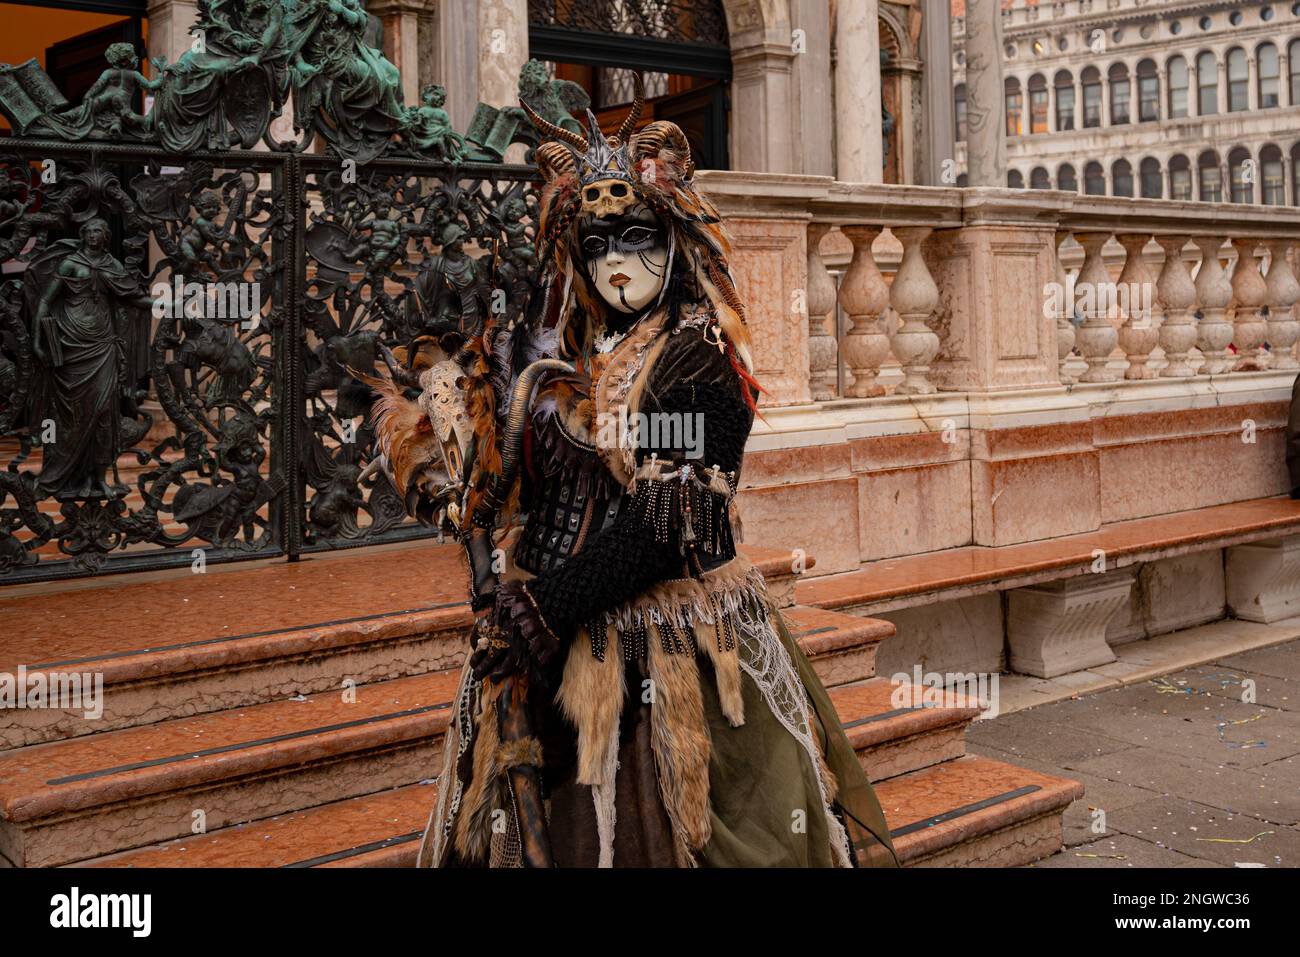 Venice Italy February 21-2022 Venice carnival masks Stock Photo